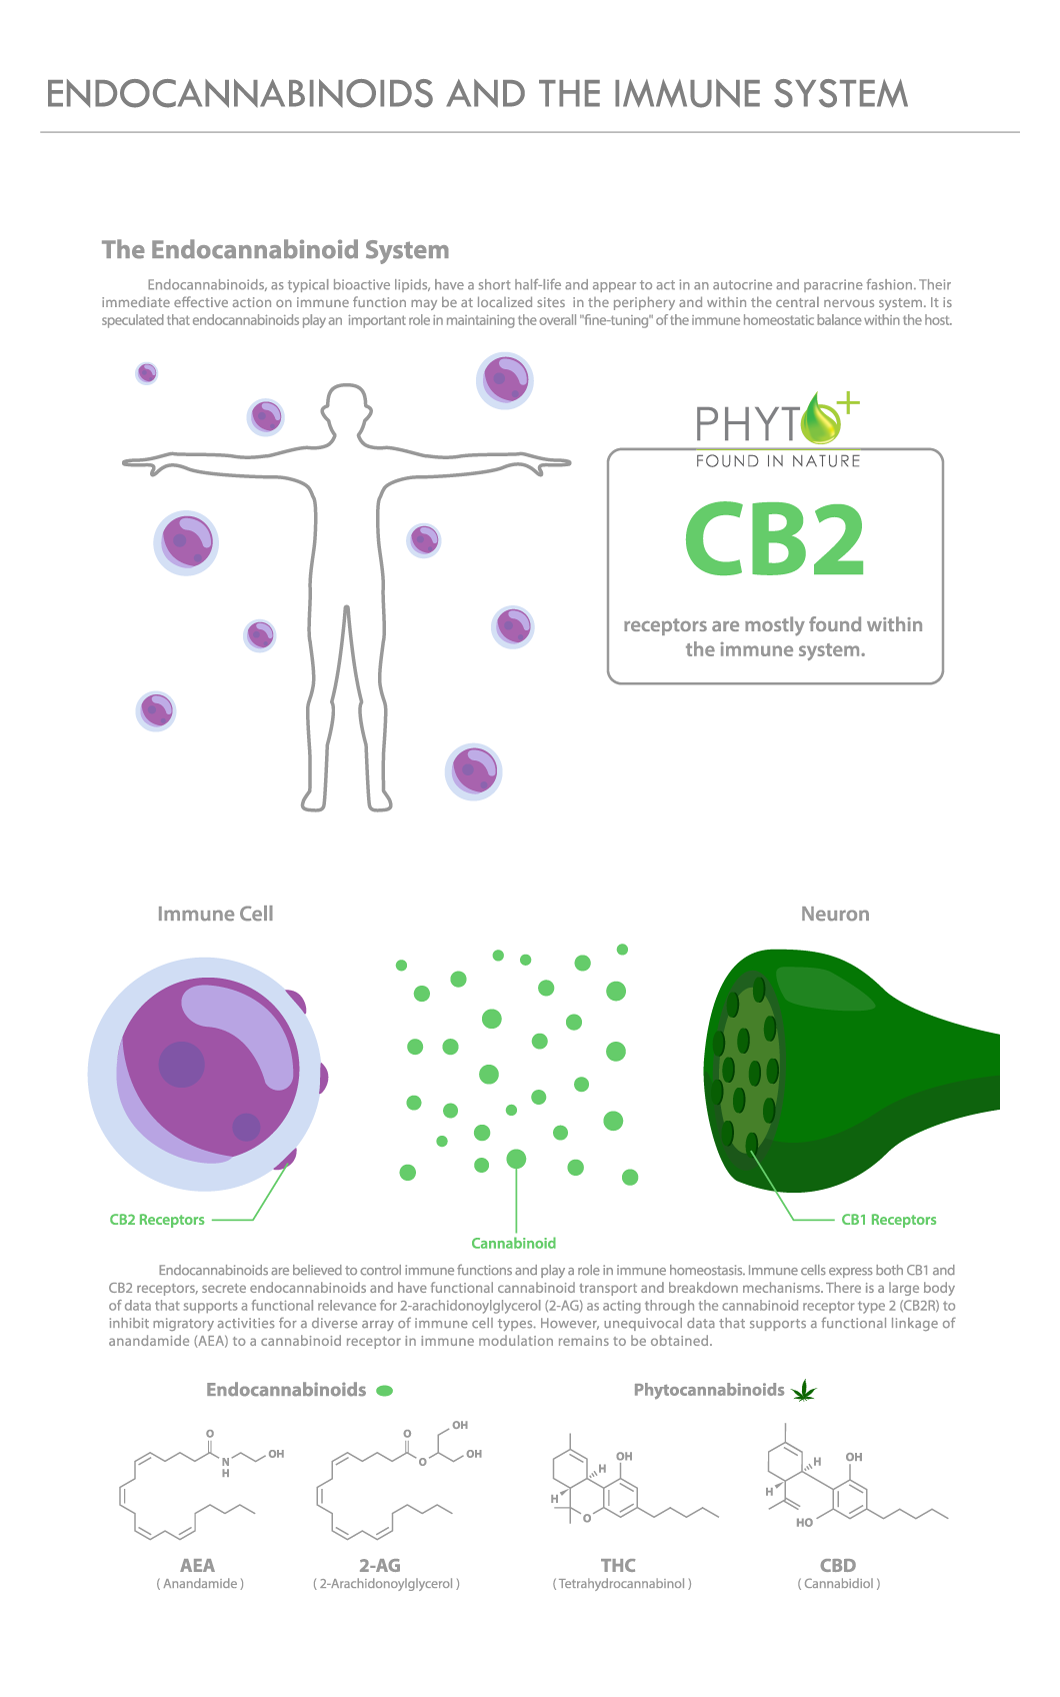 Endocannabinoiden en het immuunsysteem grafiek met CB2 receptoren